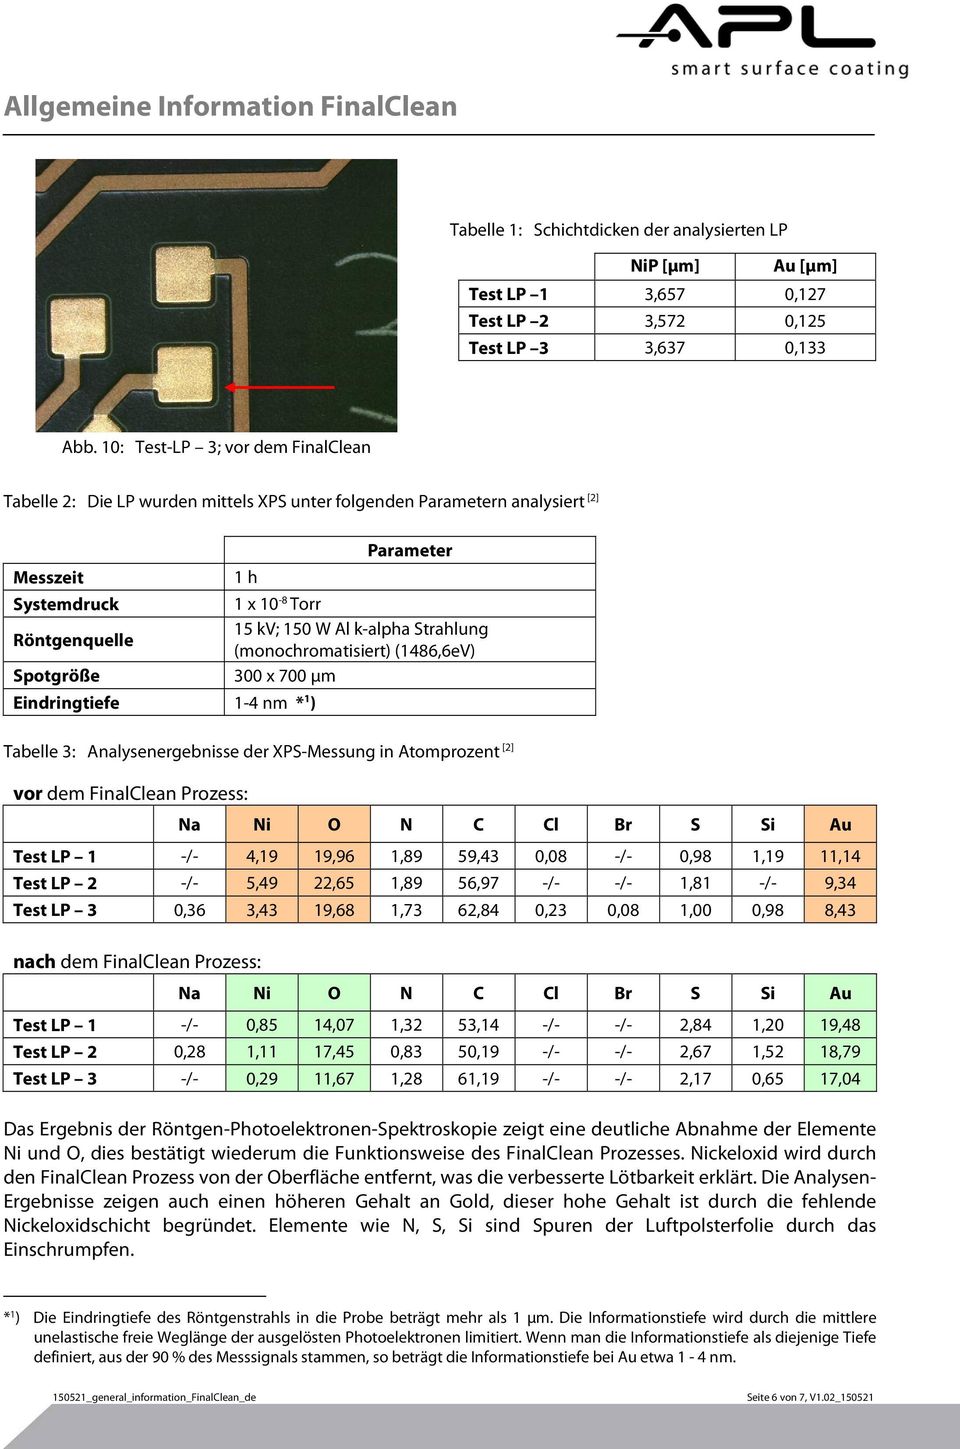 Strahlung (monochromatisiert) (1486,6eV) Spotgröße 300 x 700 µm Eindringtiefe 1-4 nm * 1 ) Tabelle 3: Analysenergebnisse der XPS-Messung in Atomprozent [2] vor dem FinalClean Prozess: Na O N C Cl Br